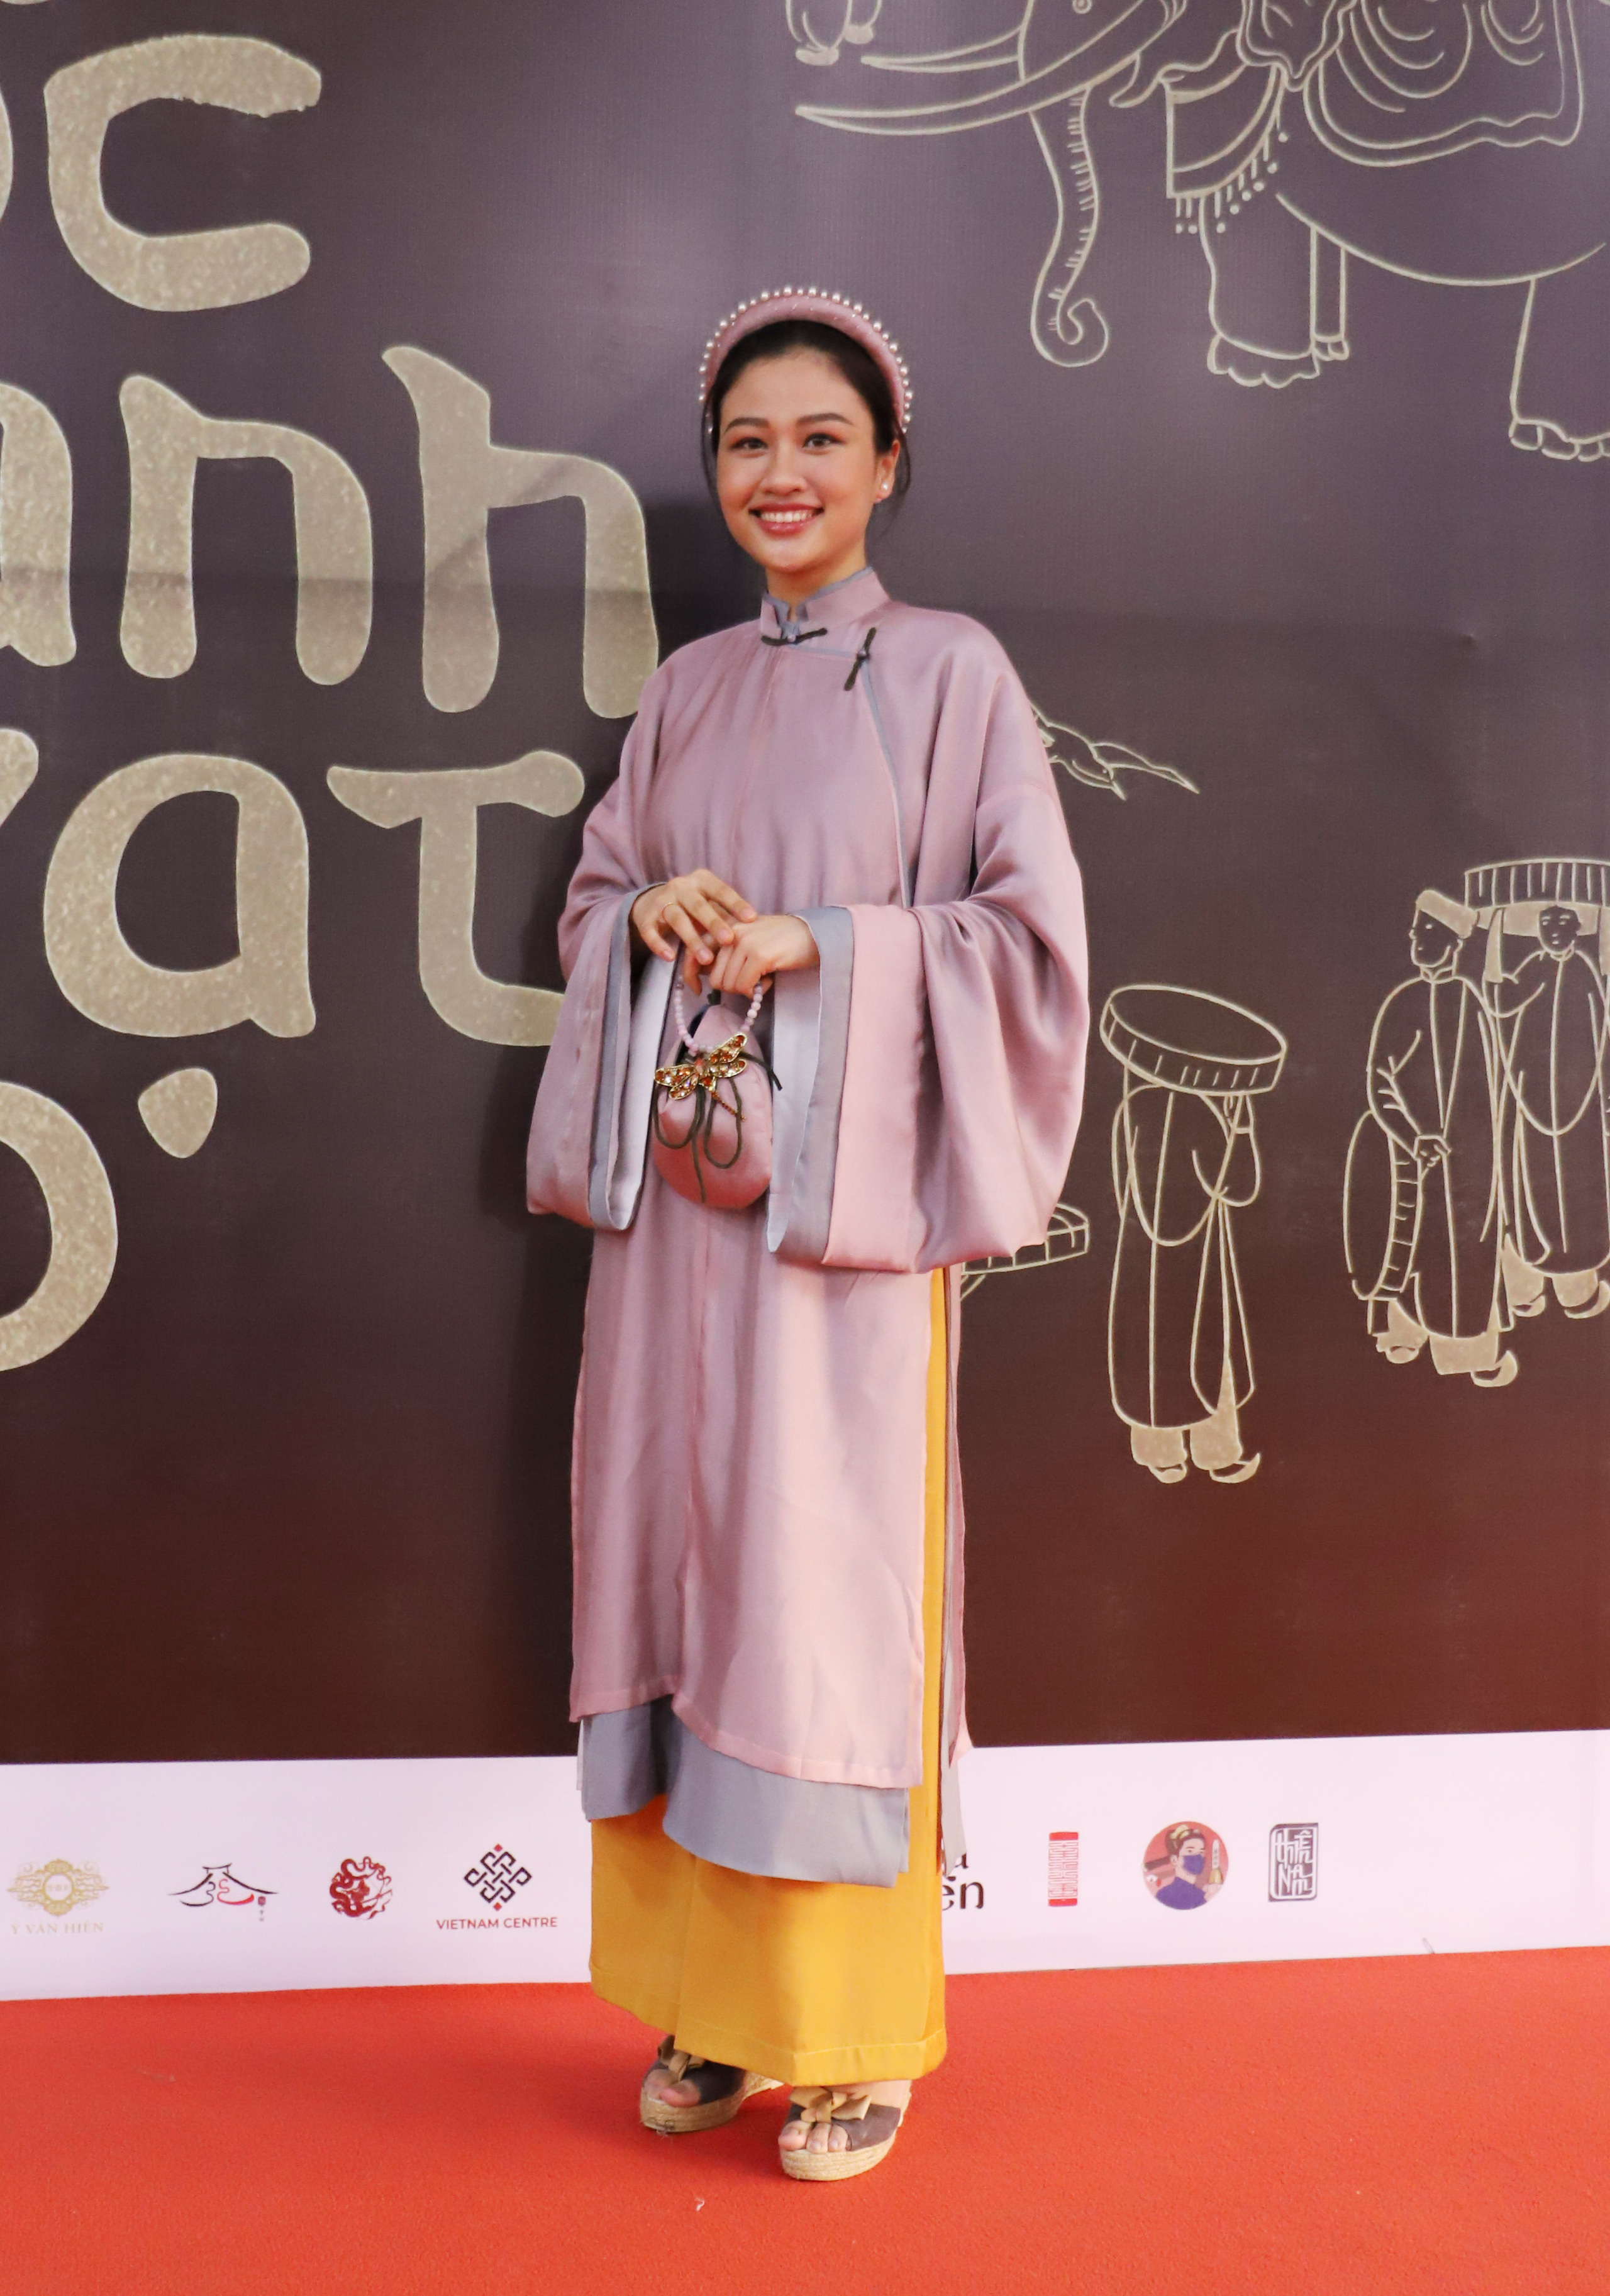 Chiêm ngưỡng những bộ áo dài cổ của phụ nữ tại Ngày hội Việt phục - Ảnh 5.